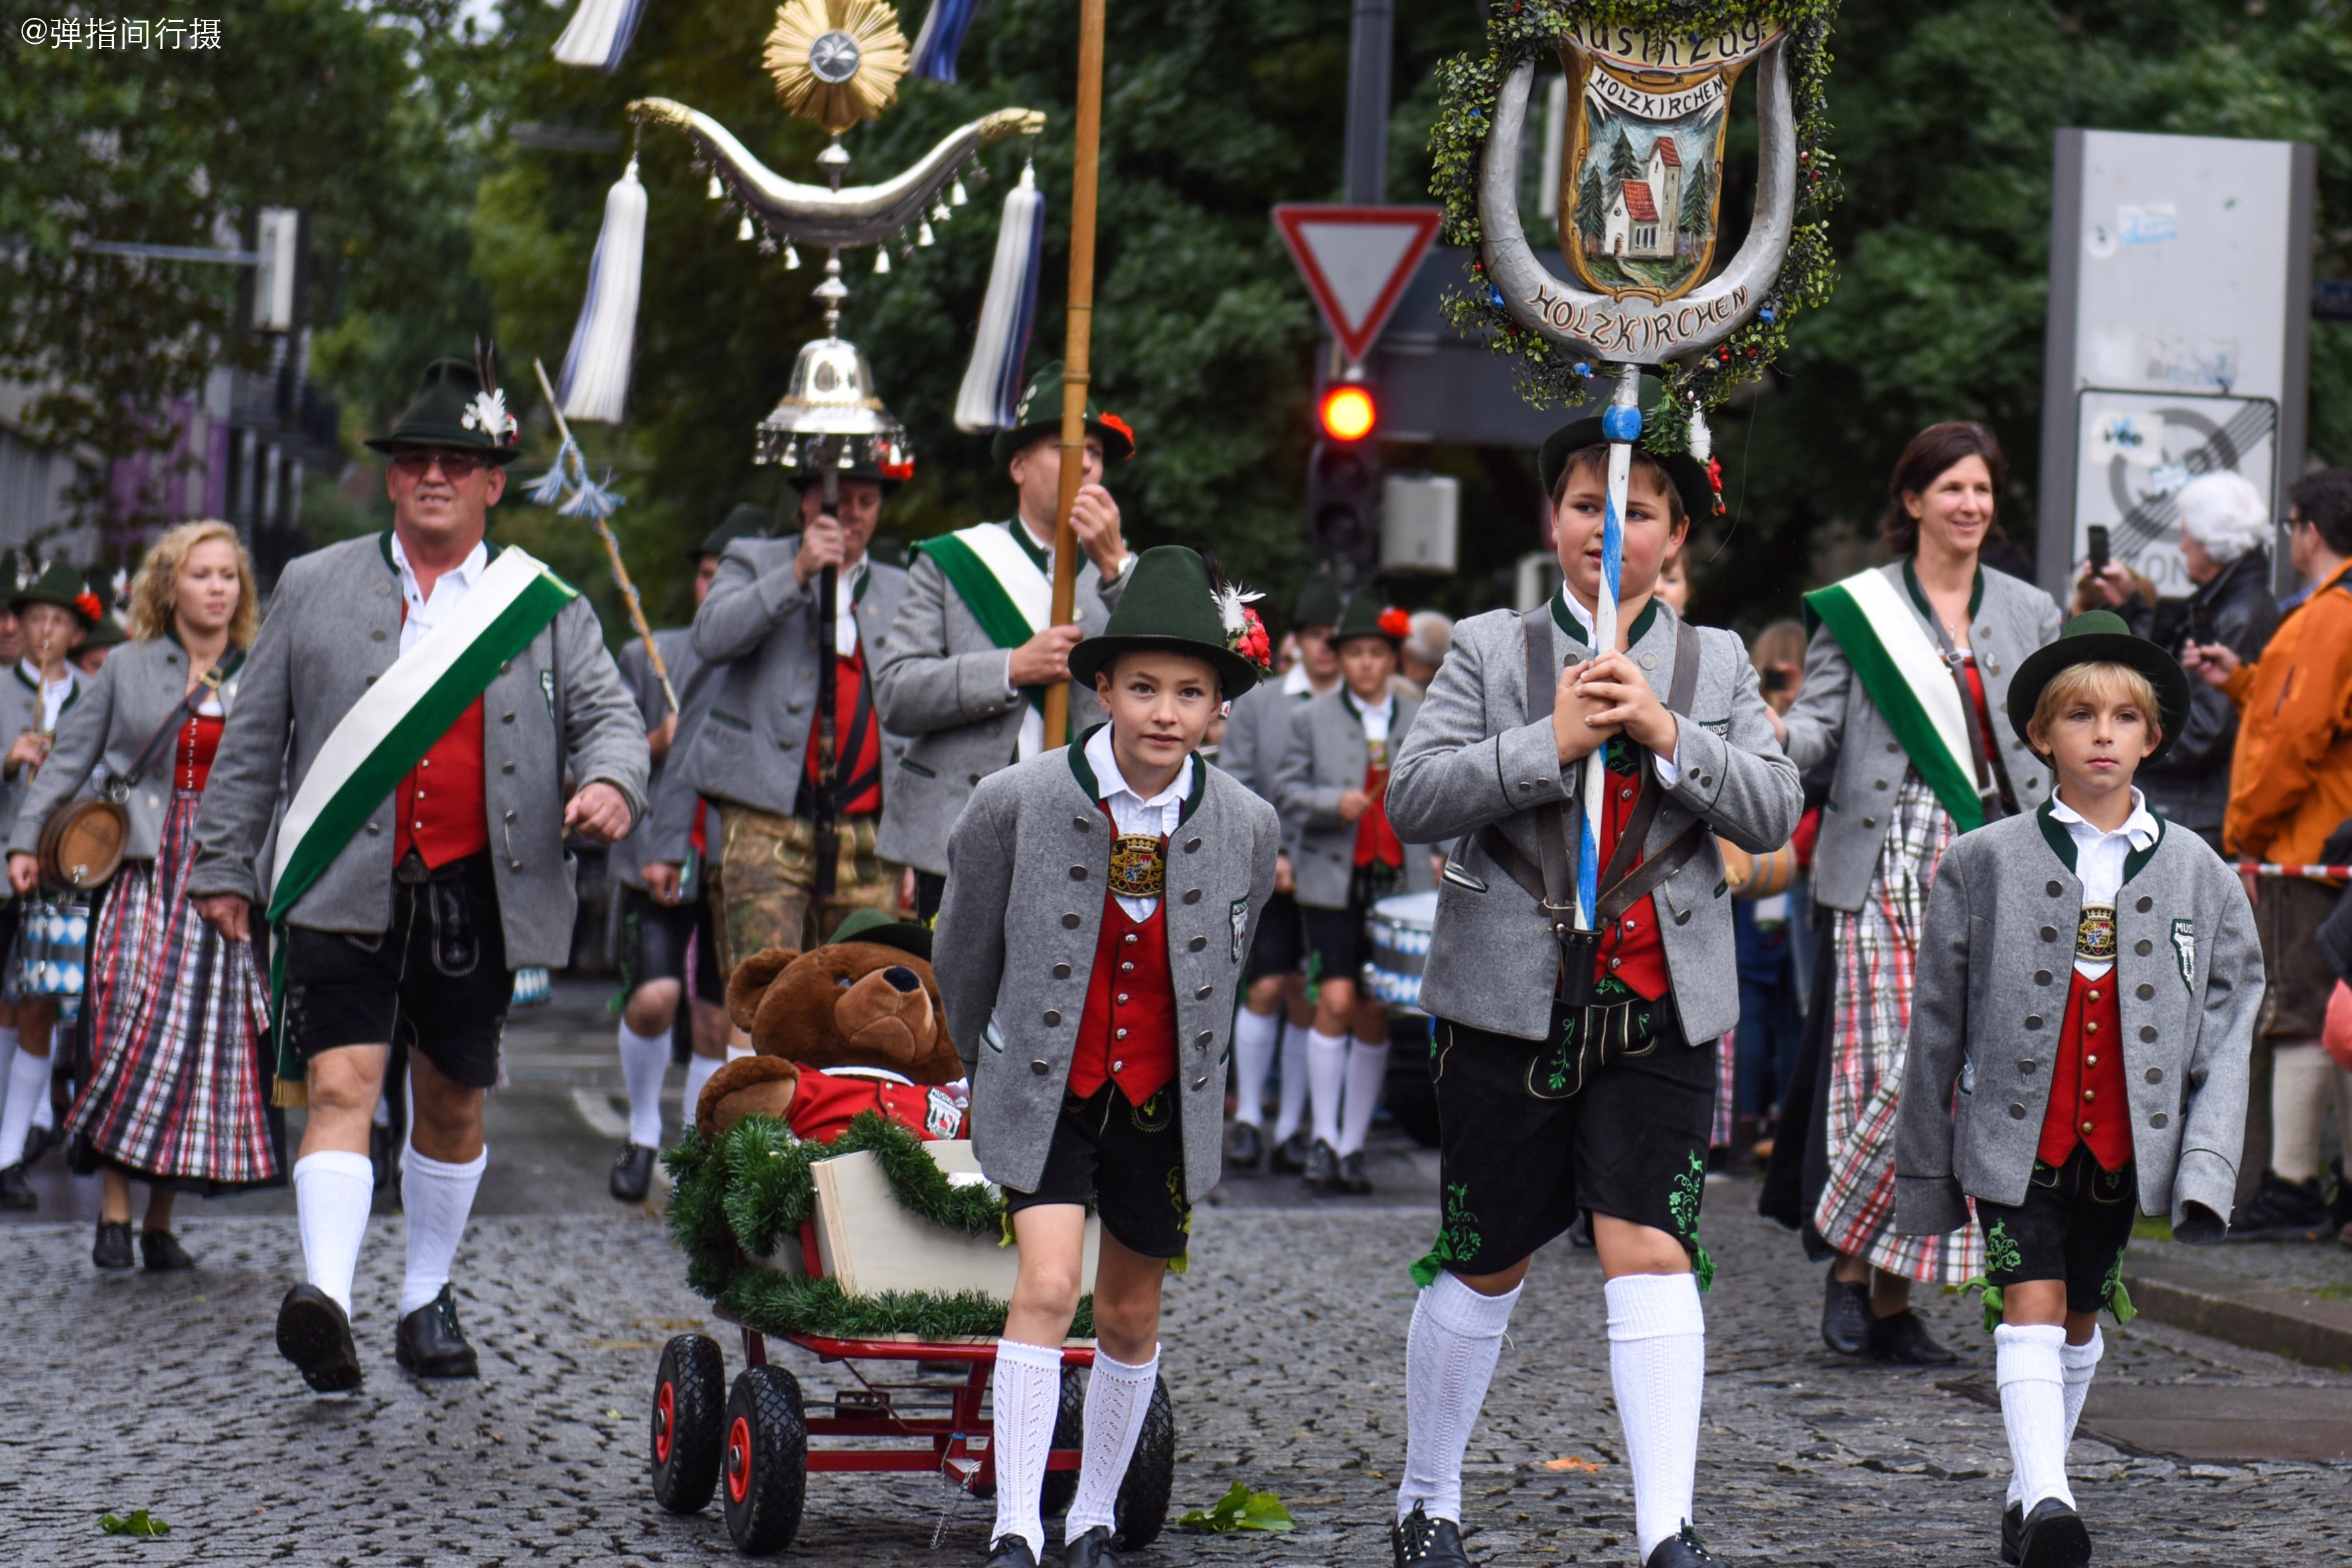 原创高度发达的德国,全民传承传统文化,爱穿民族服装游行狂欢